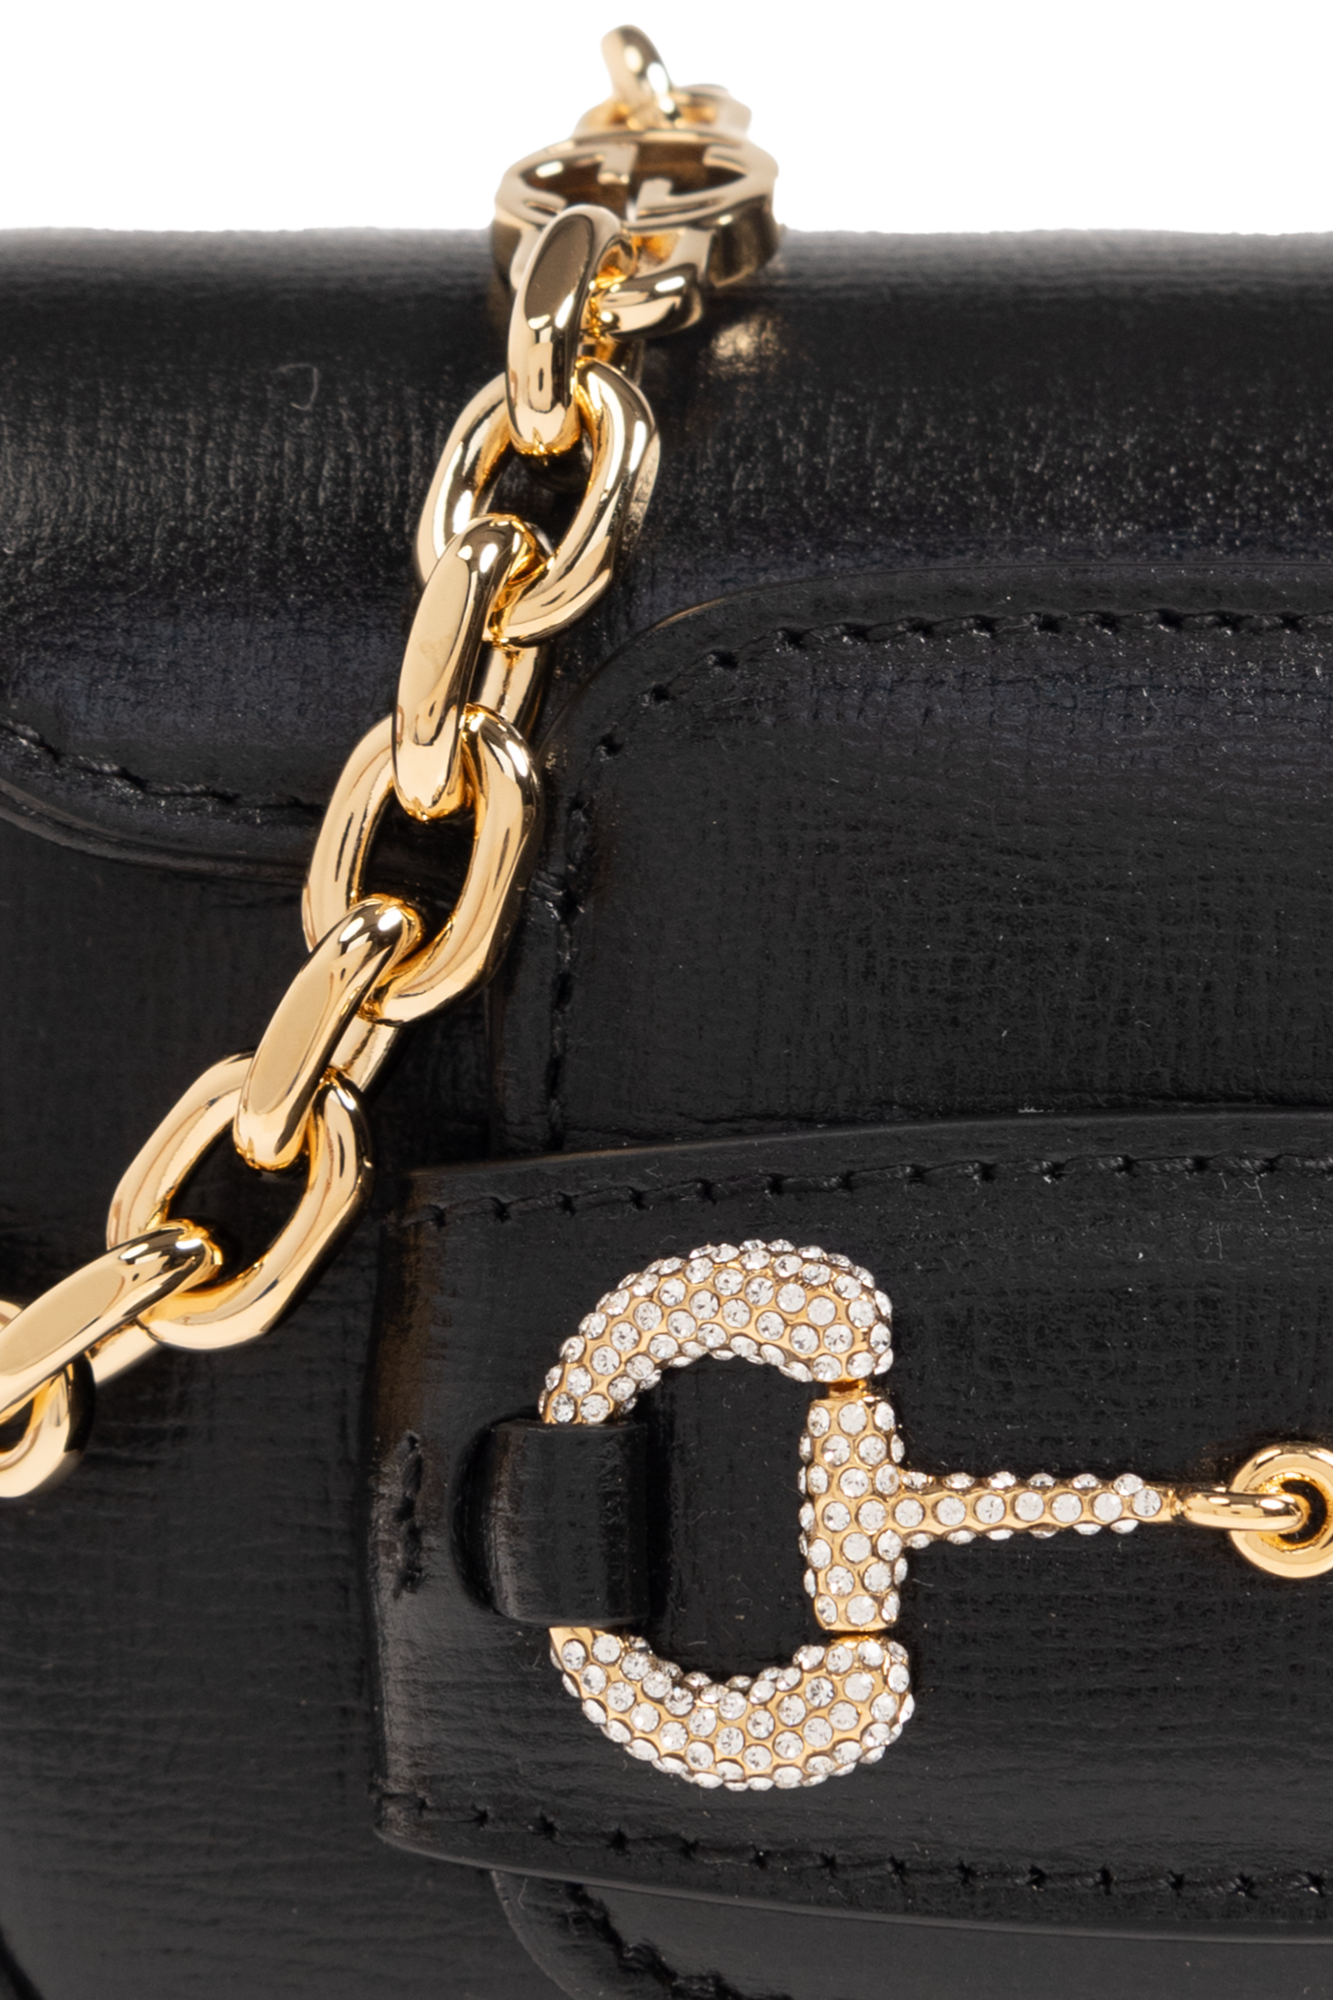 Gucci ‘Horsebit 1955’ belt bag